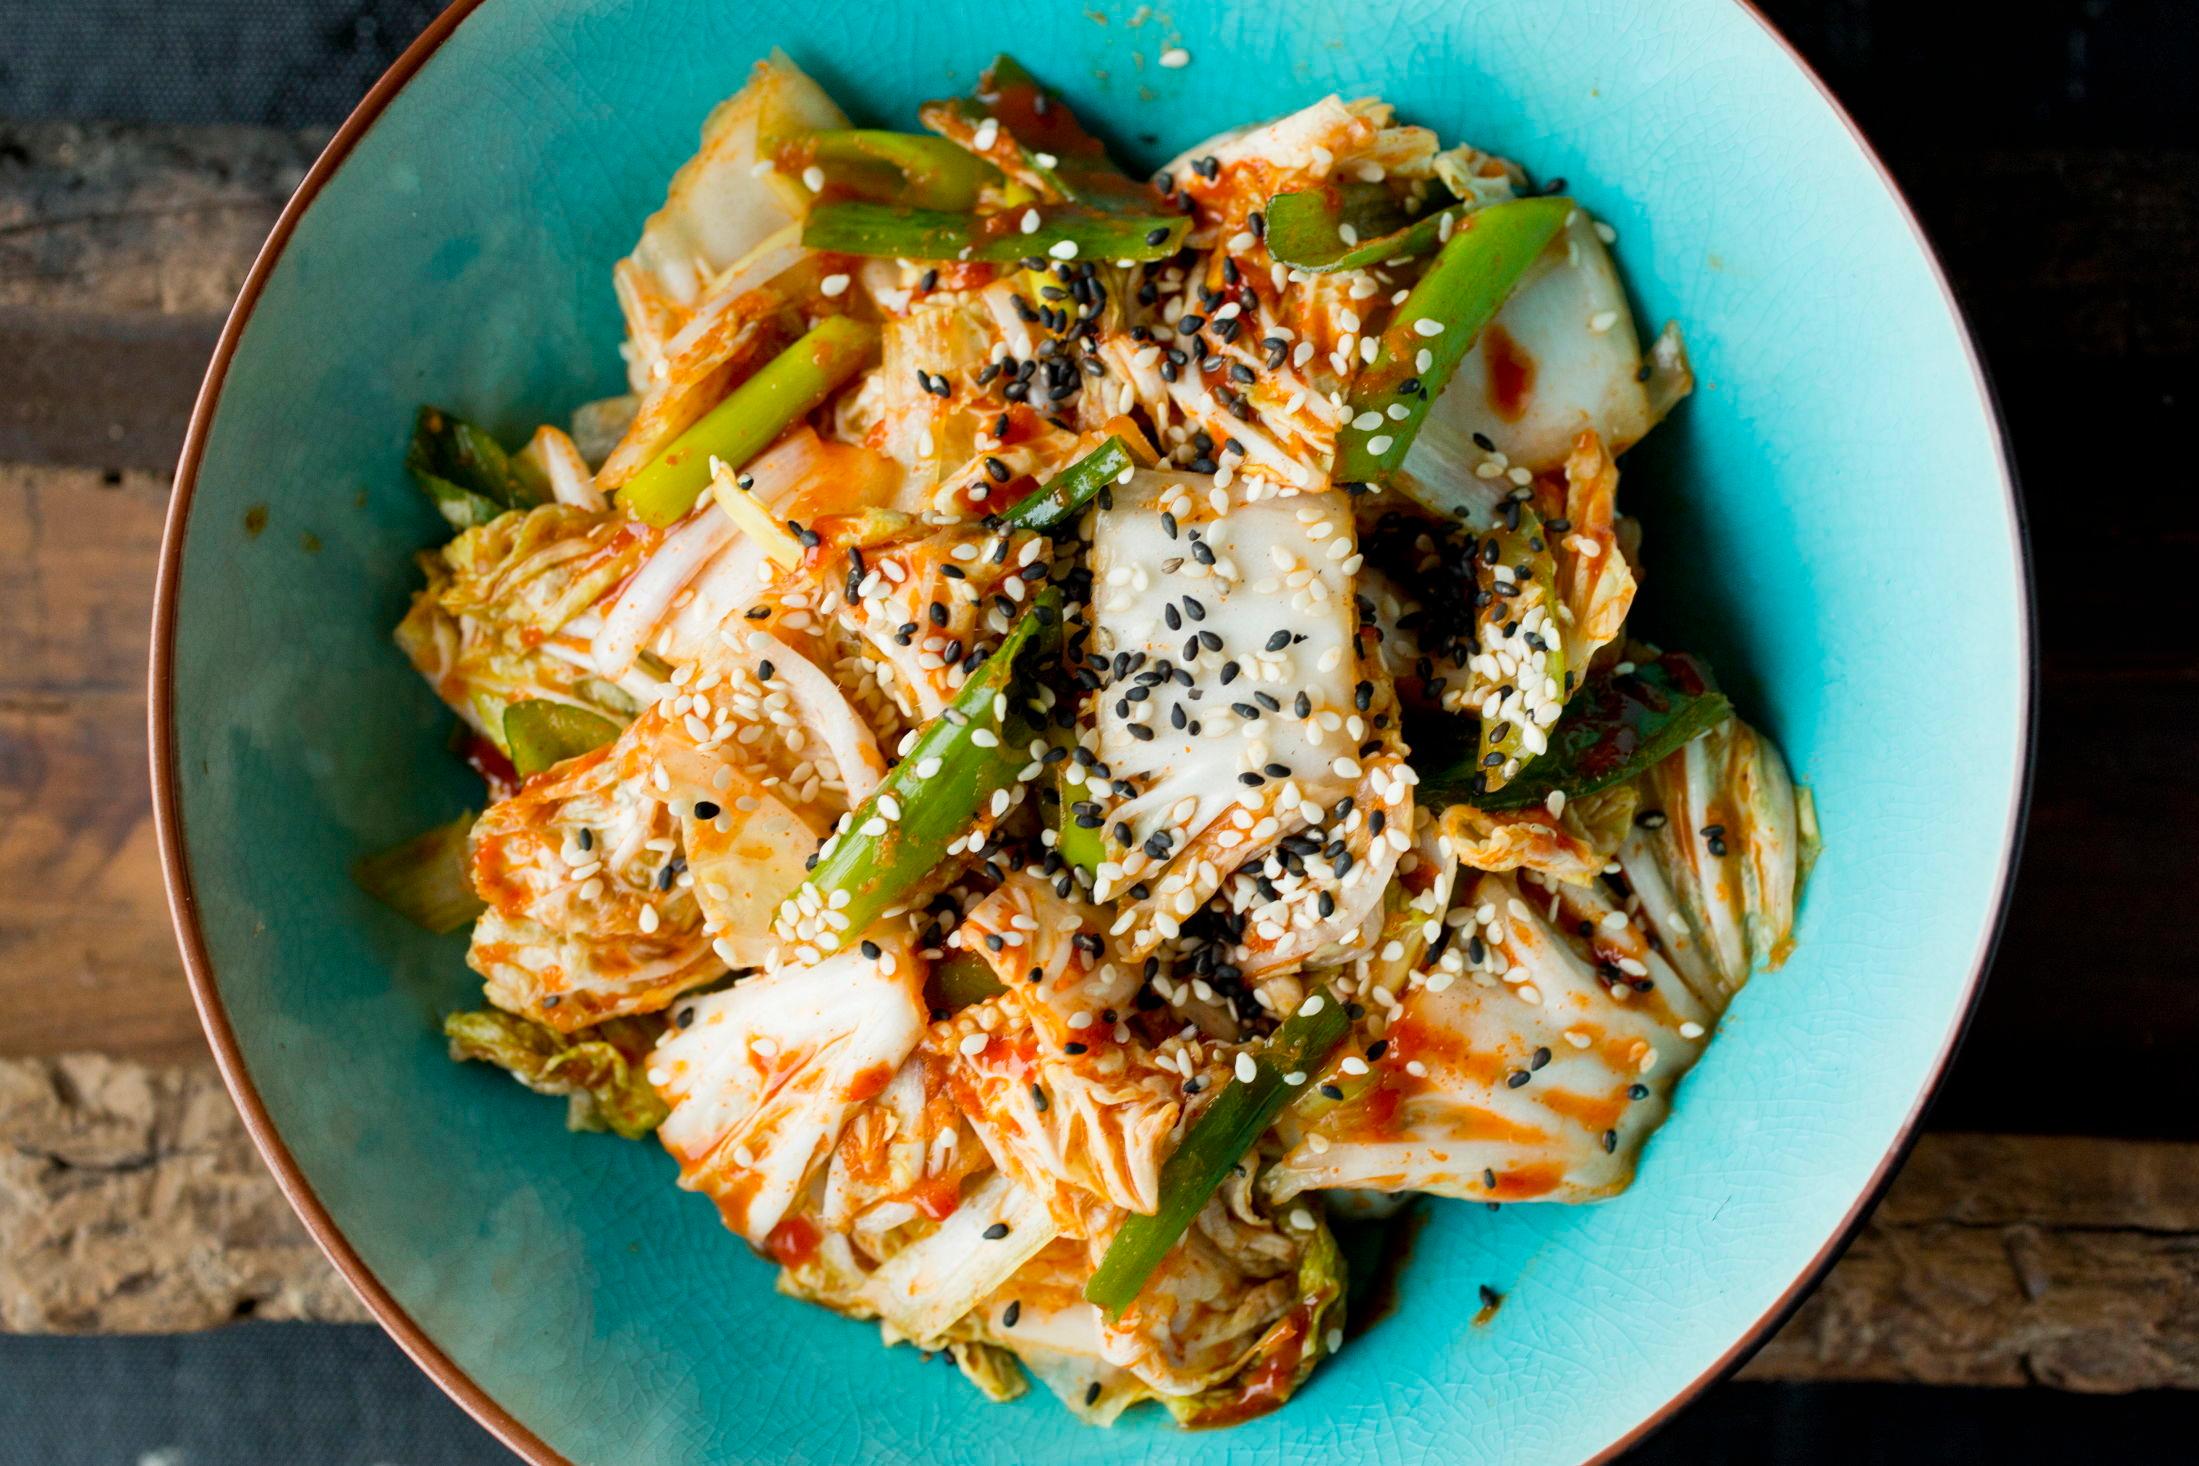 KOREAS NASJONALRETT: Sterkt, syrlig og salt - kimchi er en rett som serveres til nesten alle koreanske retter. Foto: Sara Johannessen/VG